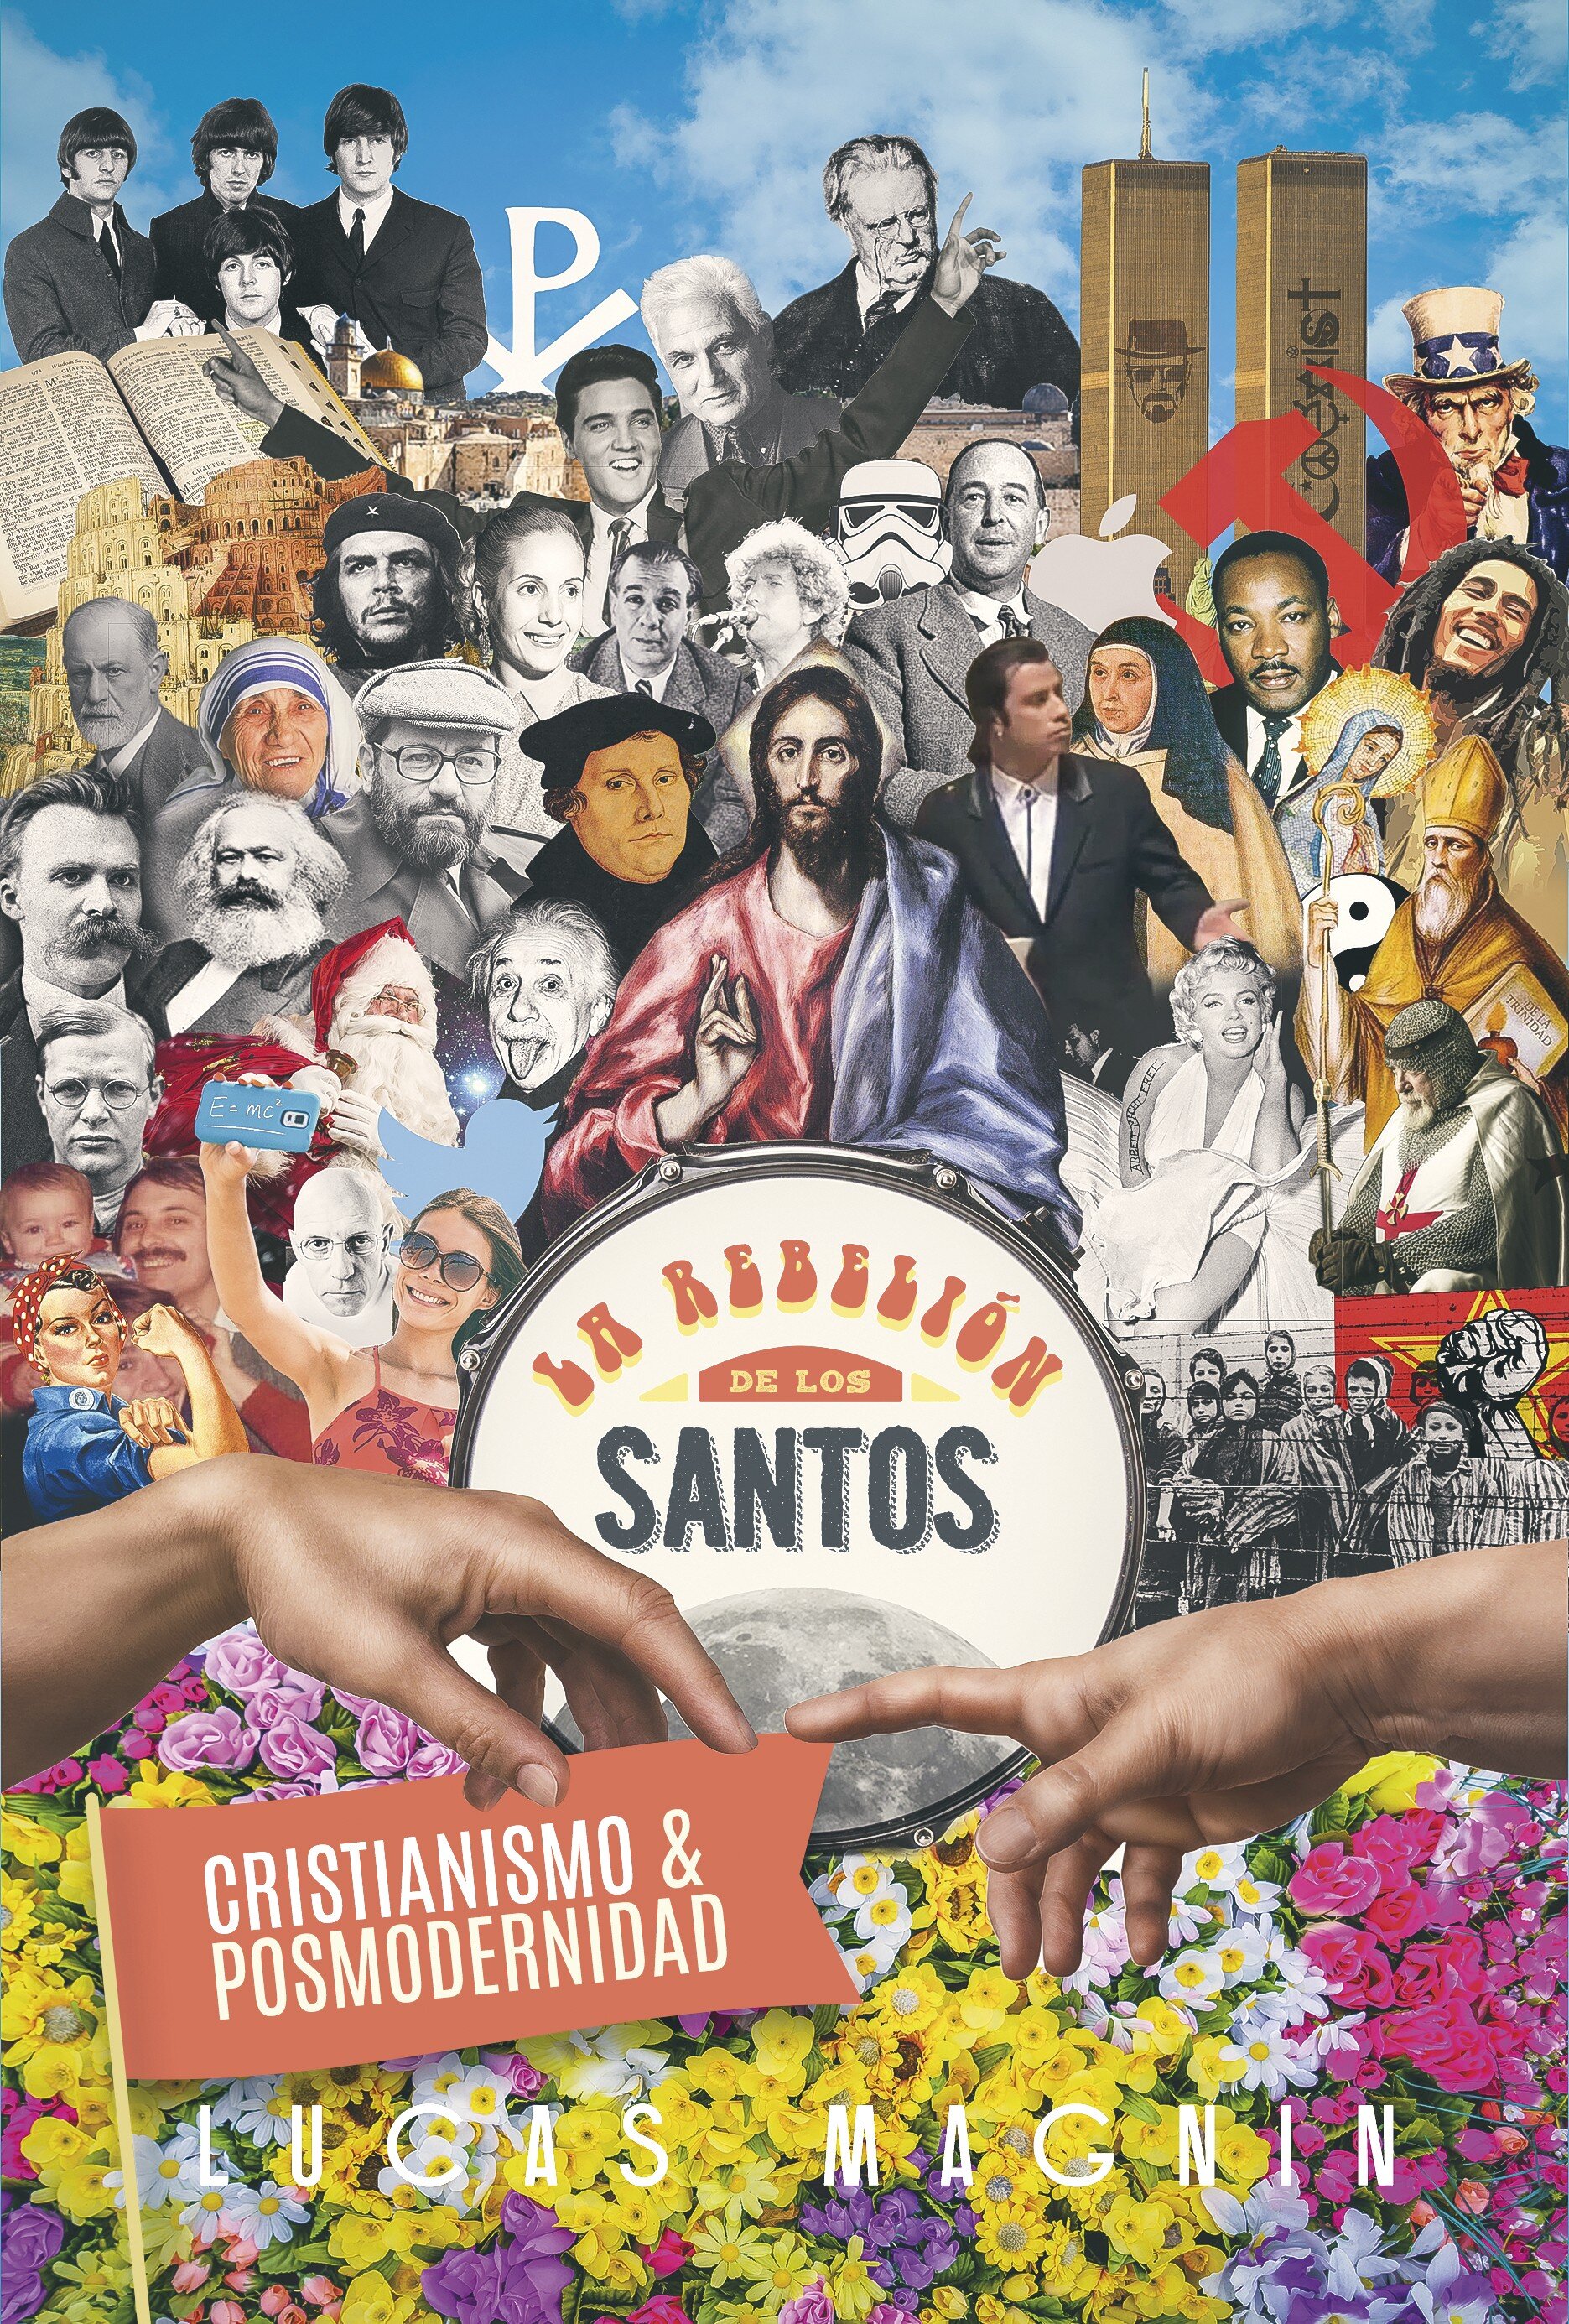 Cristianismo y posmodernidad: La rebelión de los Santos